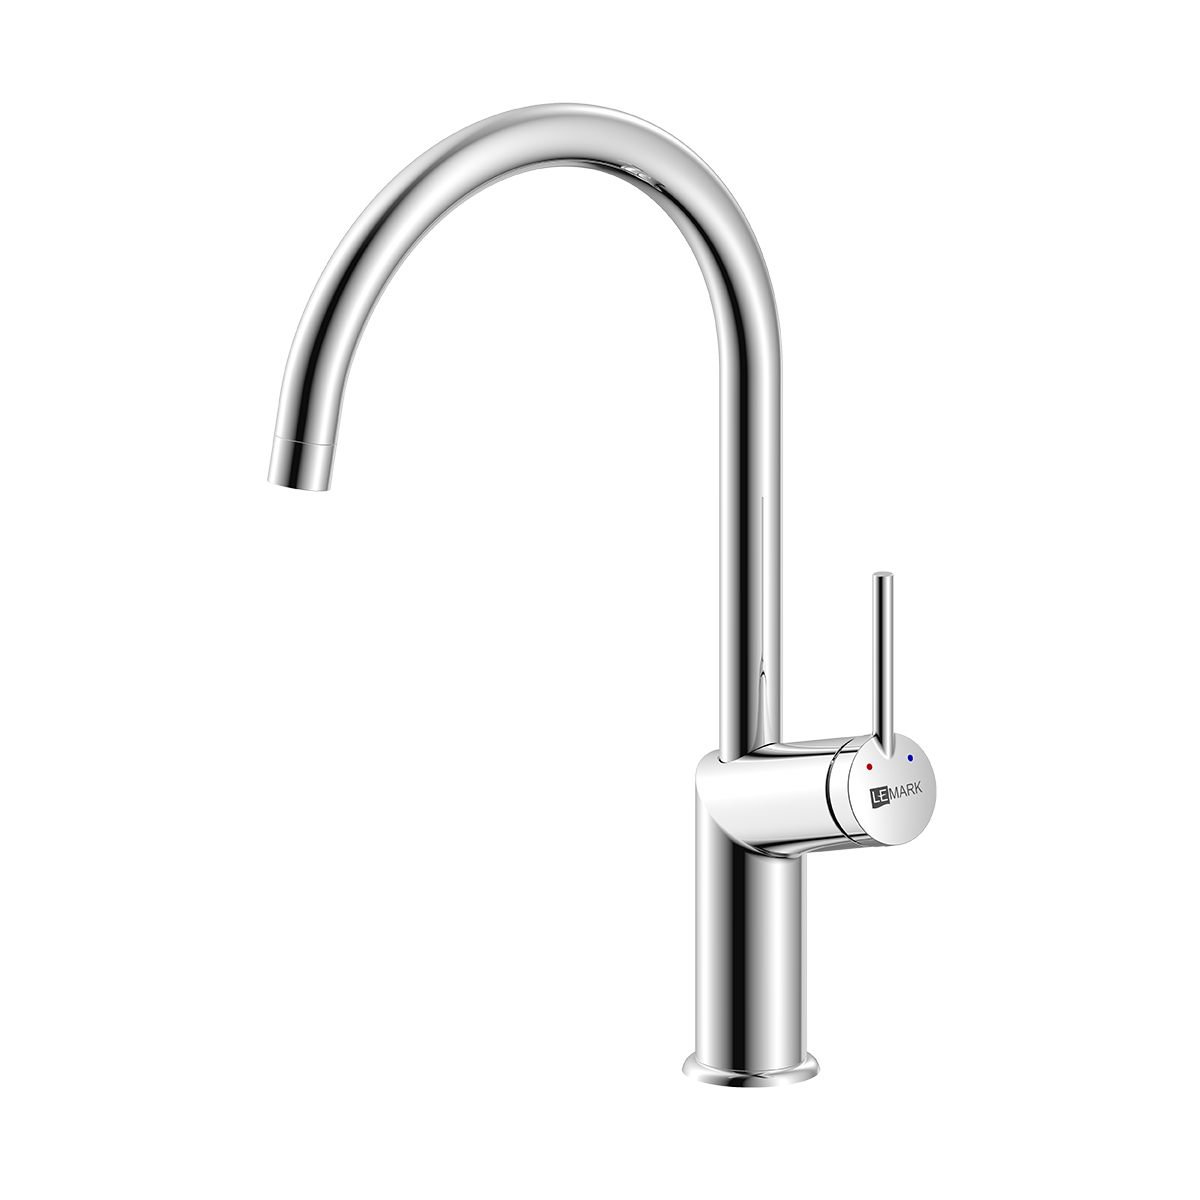 LM3805C Kitchen faucet with swivel spout